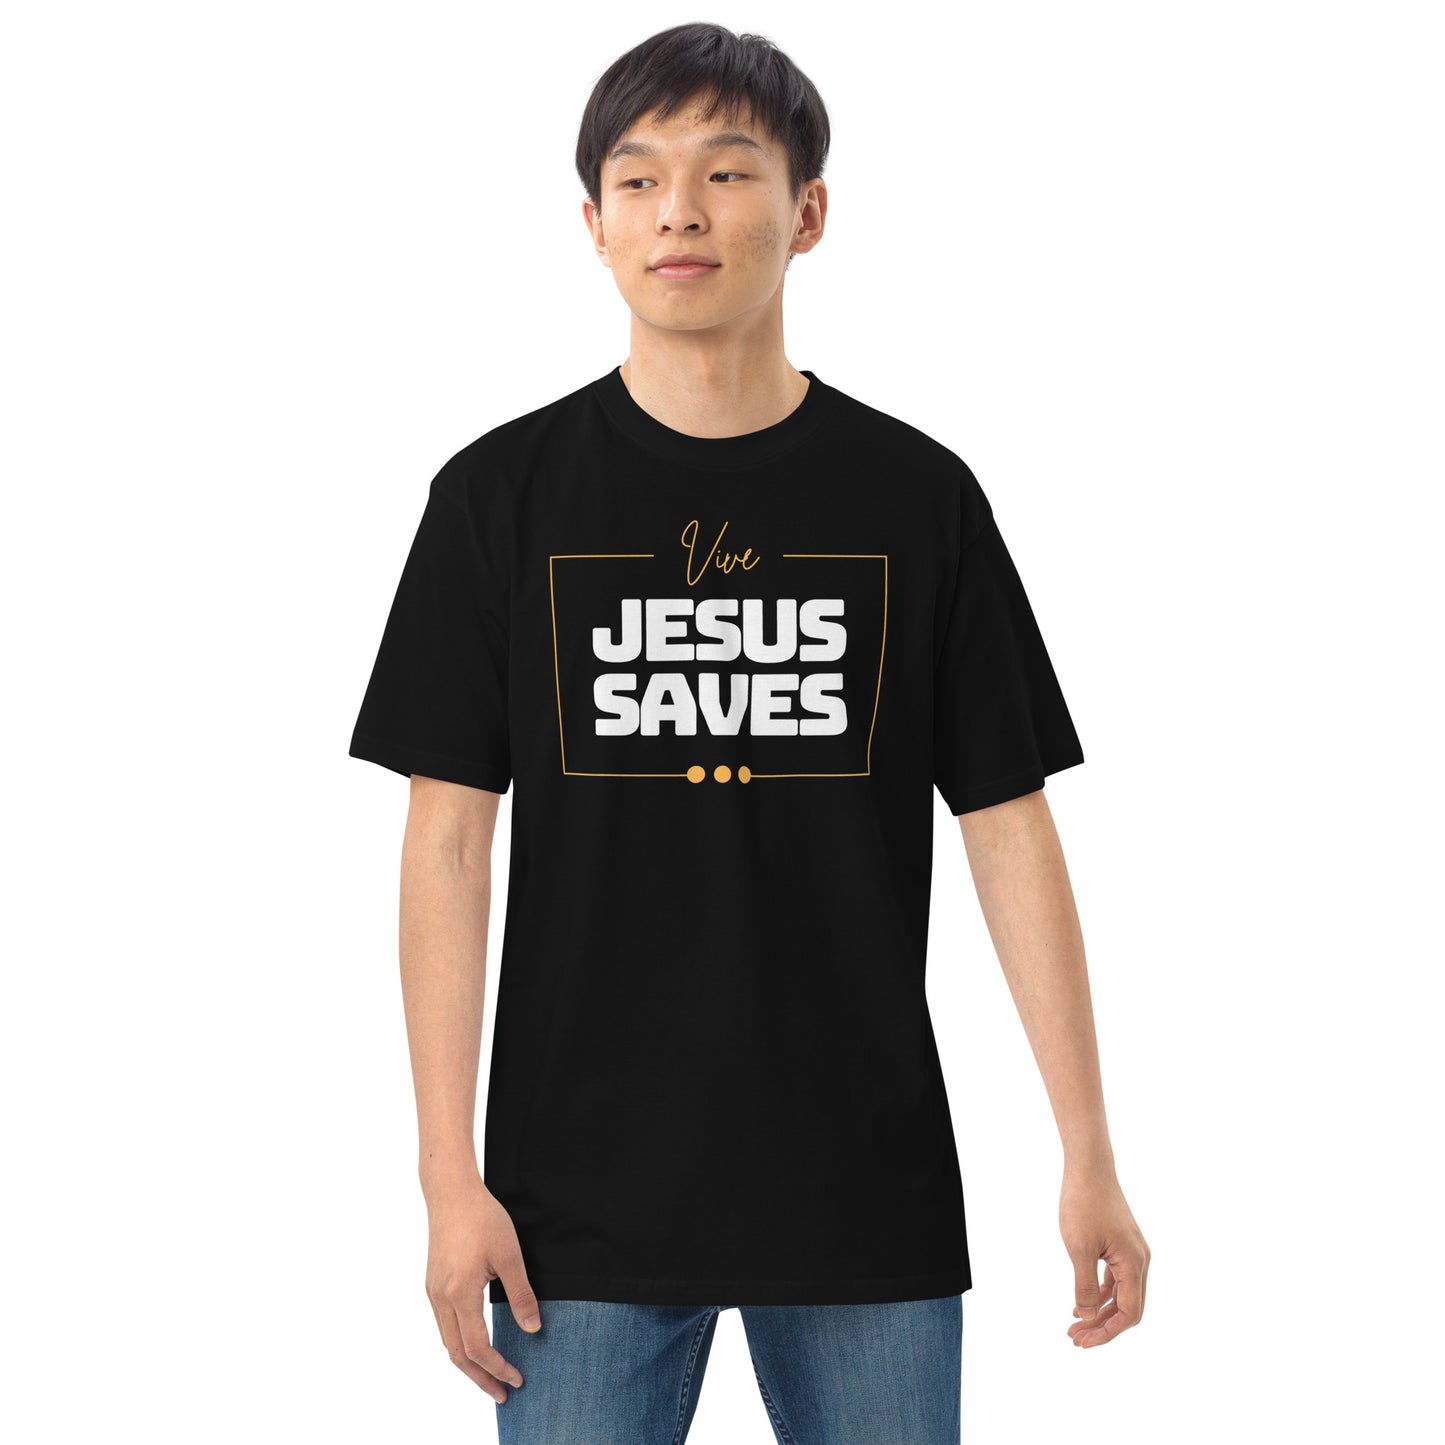 Jesus Saves 2.0